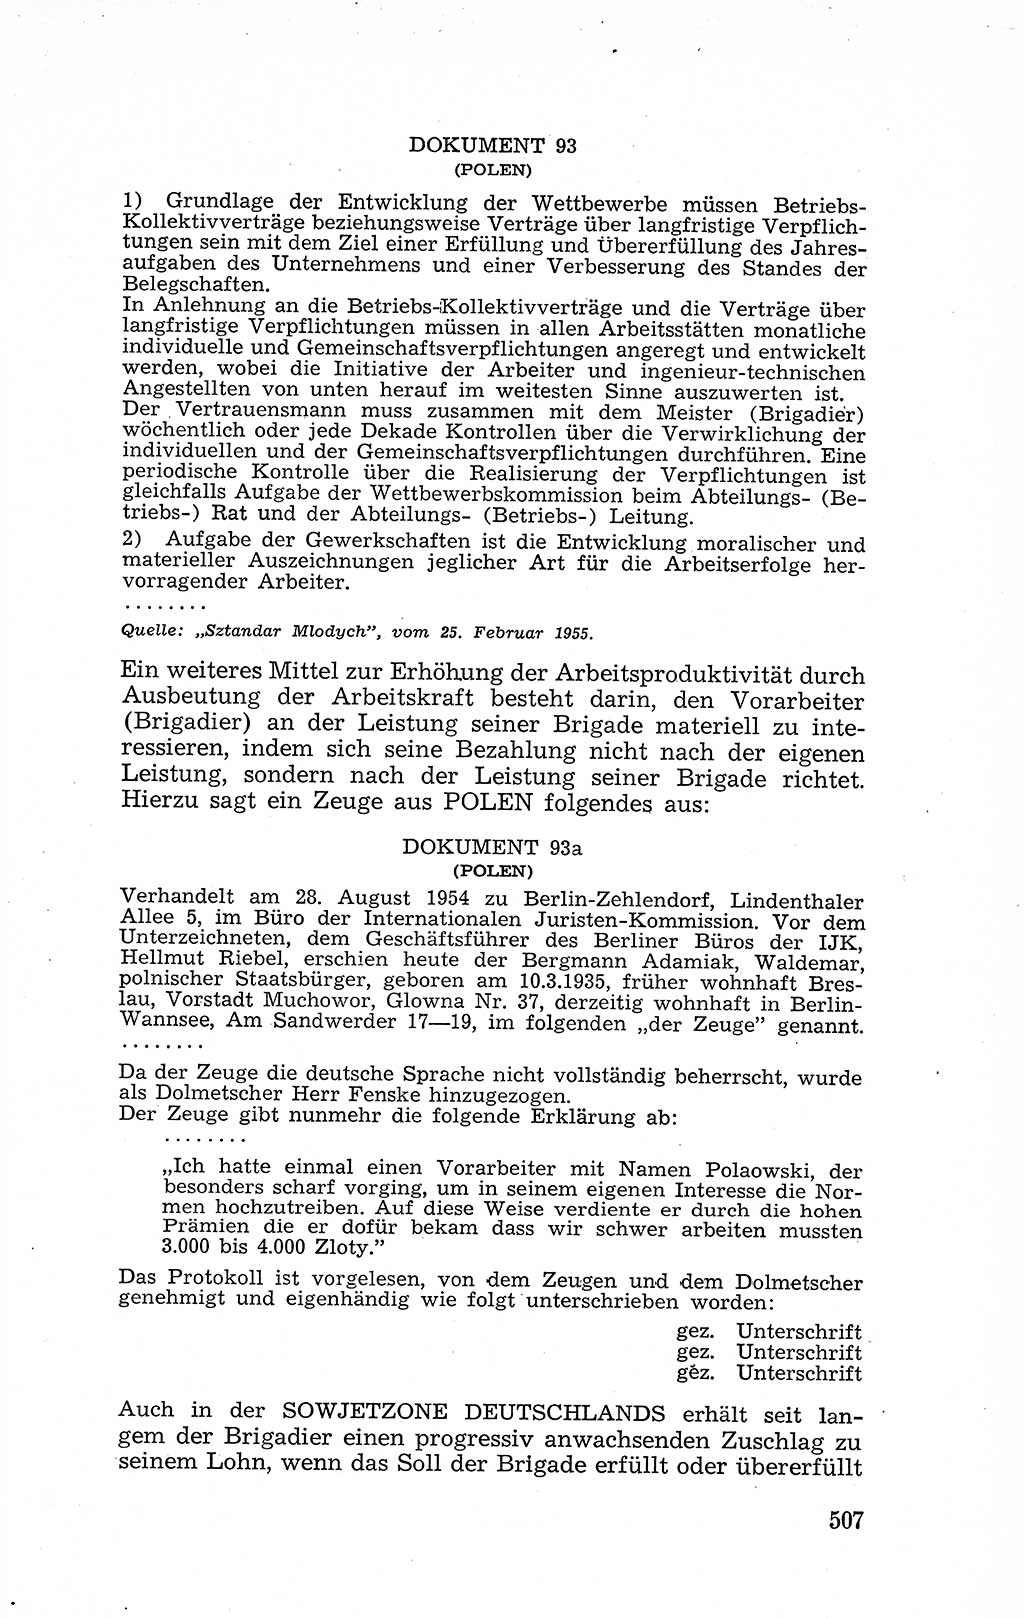 Recht in Fesseln, Dokumente, Internationale Juristen-Kommission [Bundesrepublik Deutschland (BRD)] 1955, Seite 507 (R. Dok. IJK BRD 1955, S. 507)